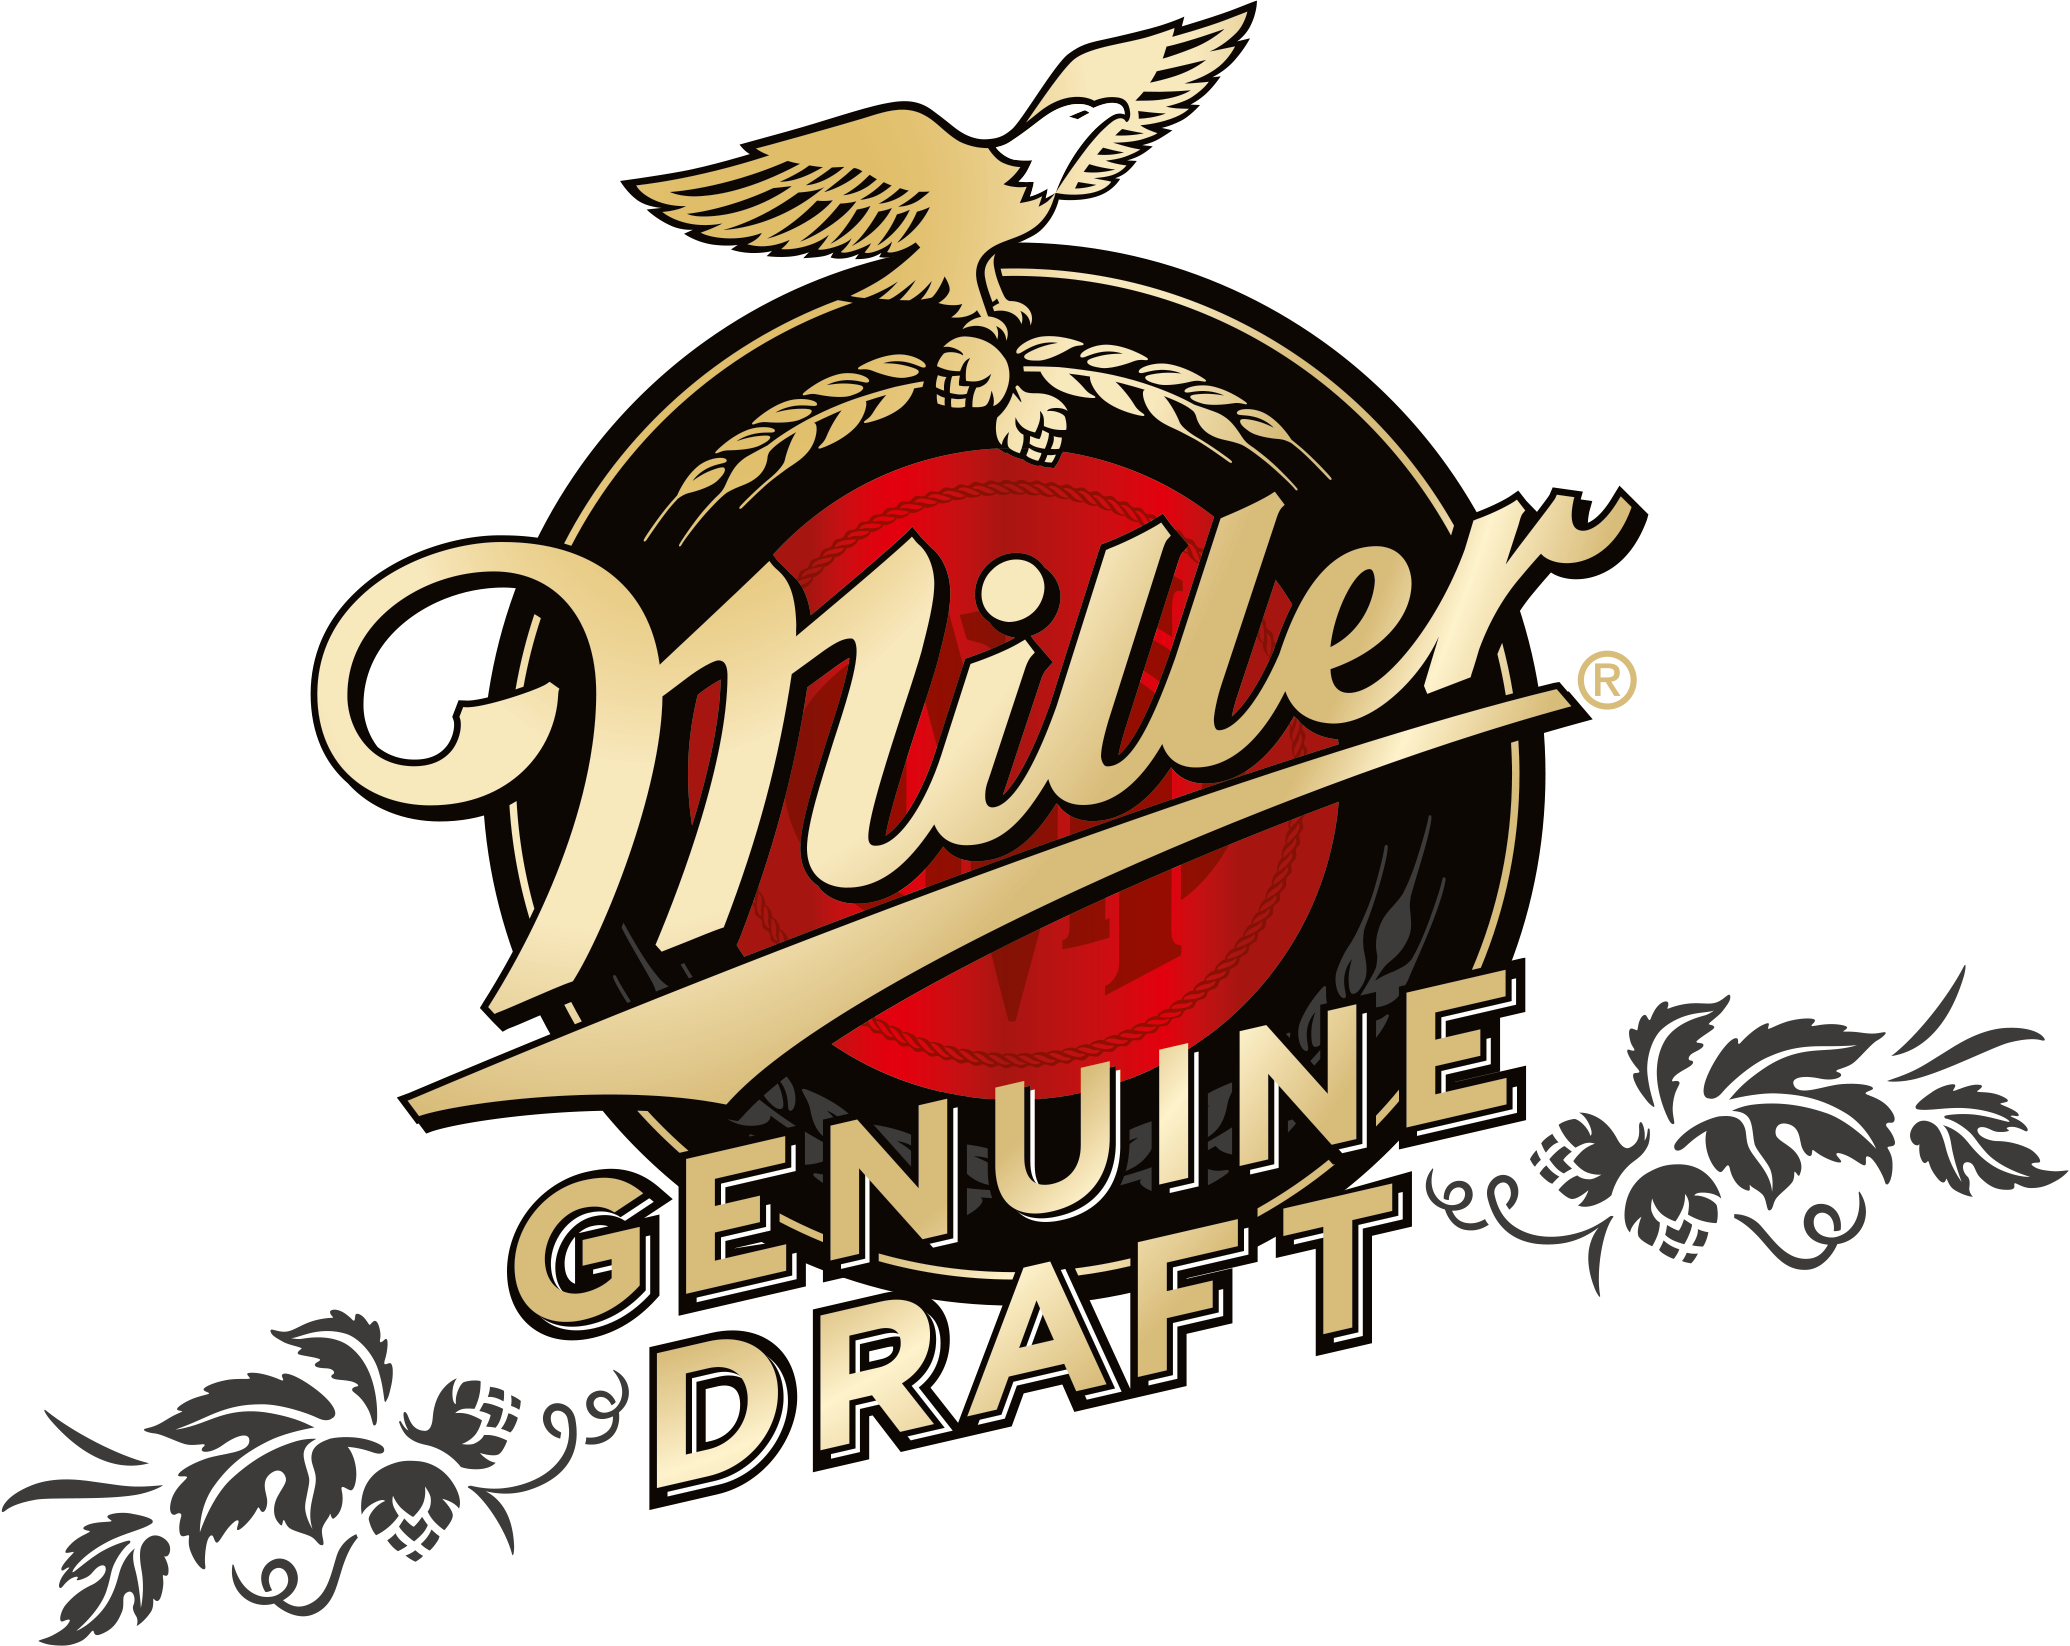 Пиво Миллер Дженьюин ДРАФТ. Miller пиво логотип. Миллер пиво этикетка. Пивные бренды логотипы. Миллер miller